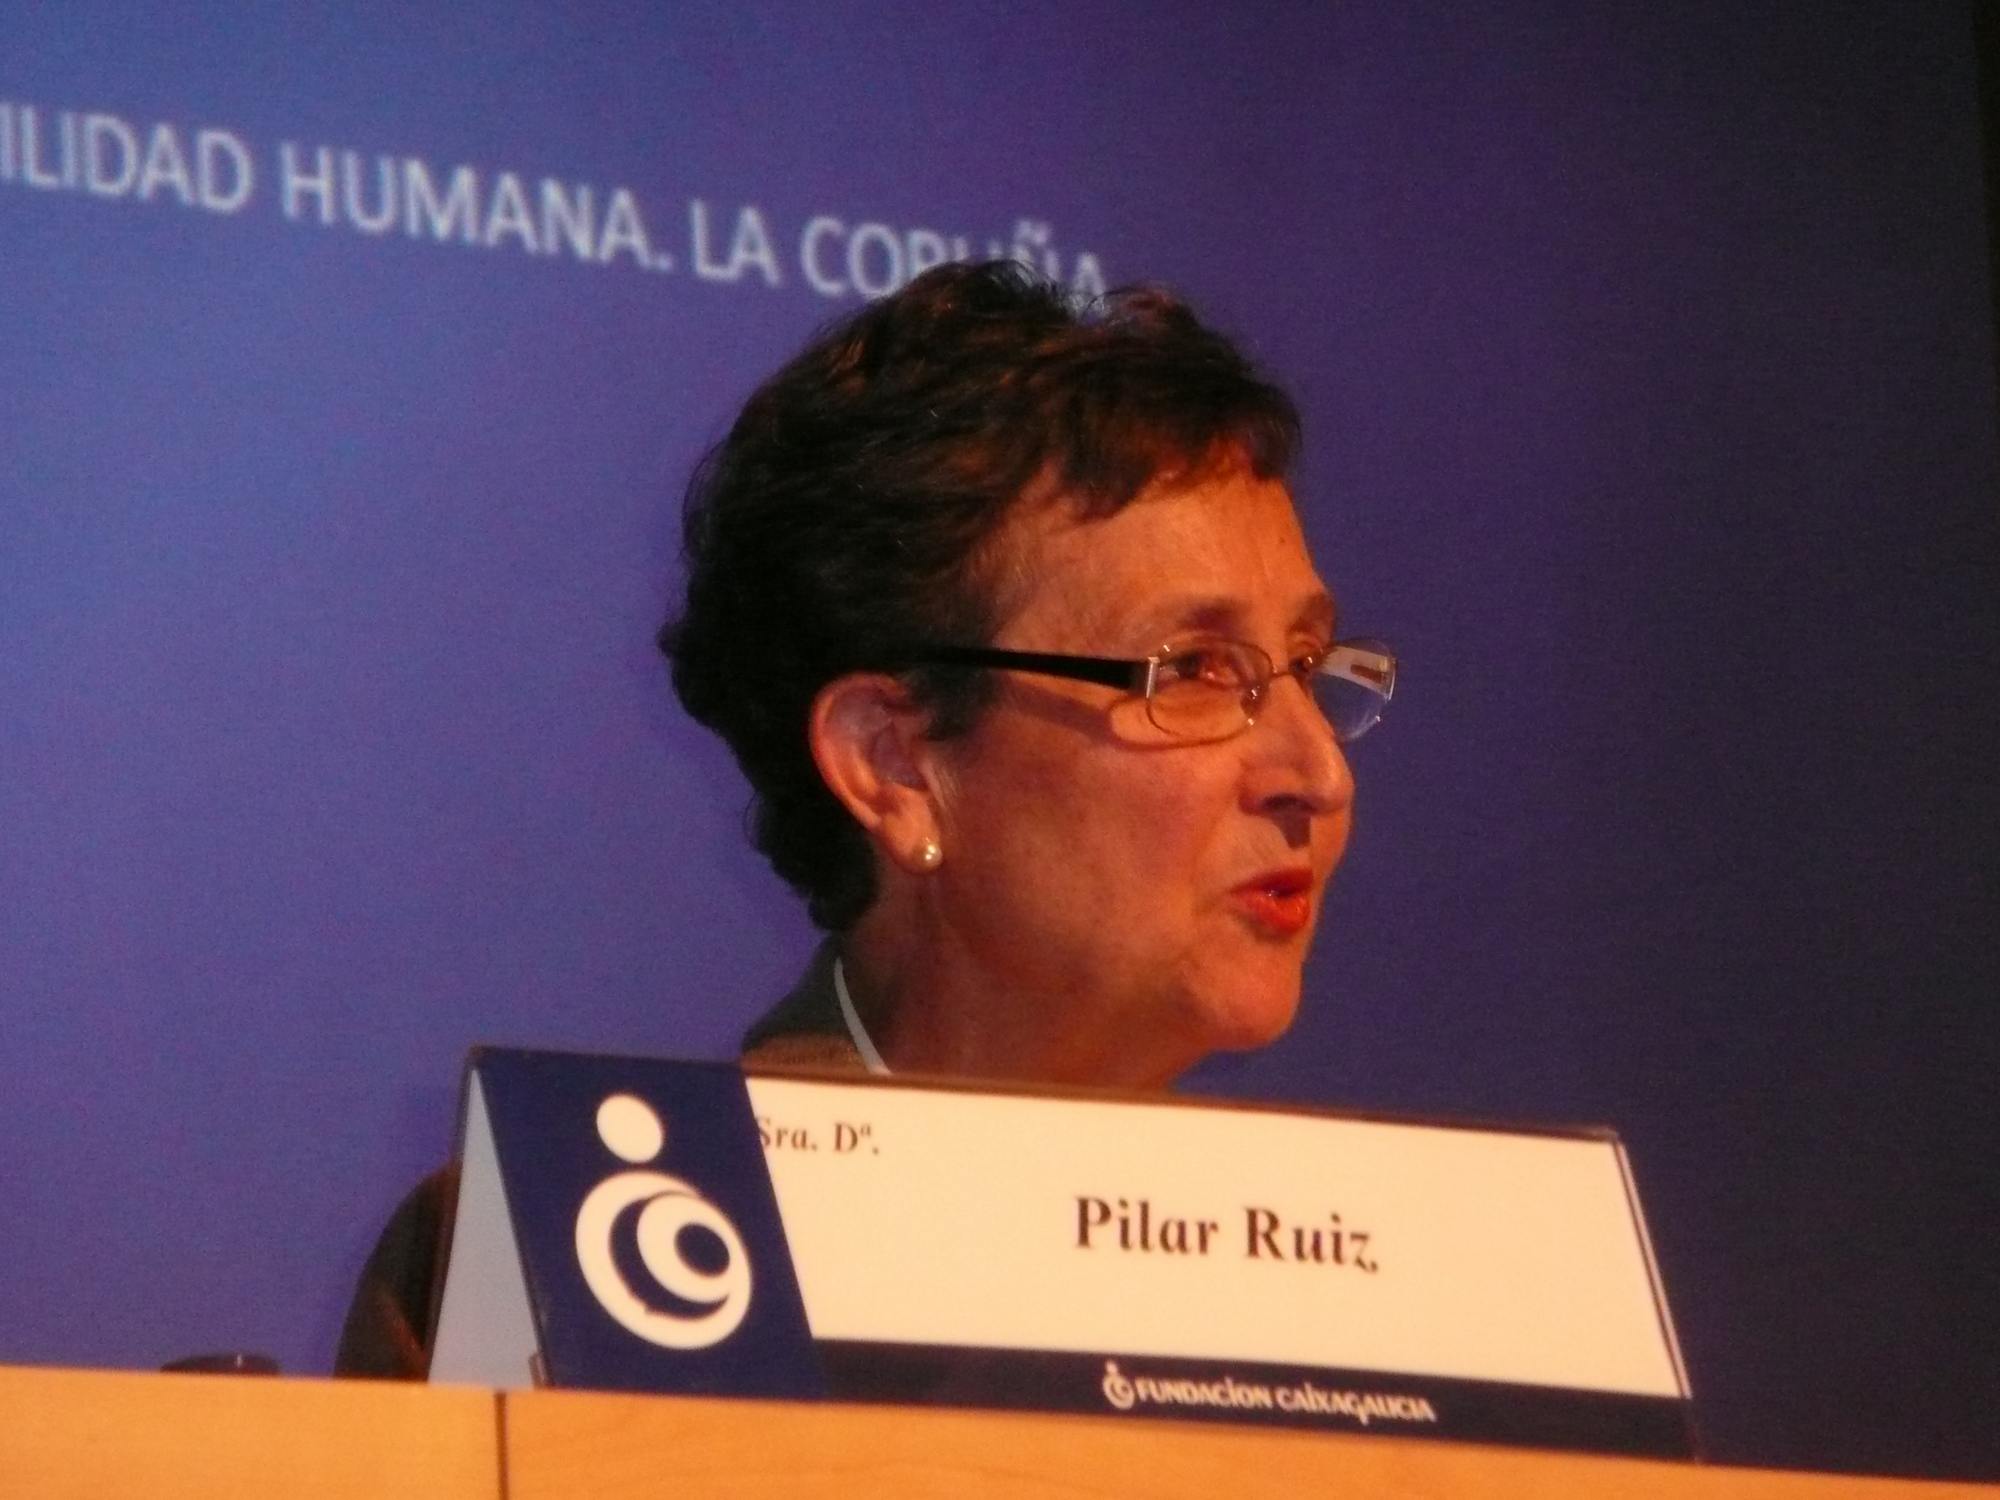 Pilar Ruiz 2010